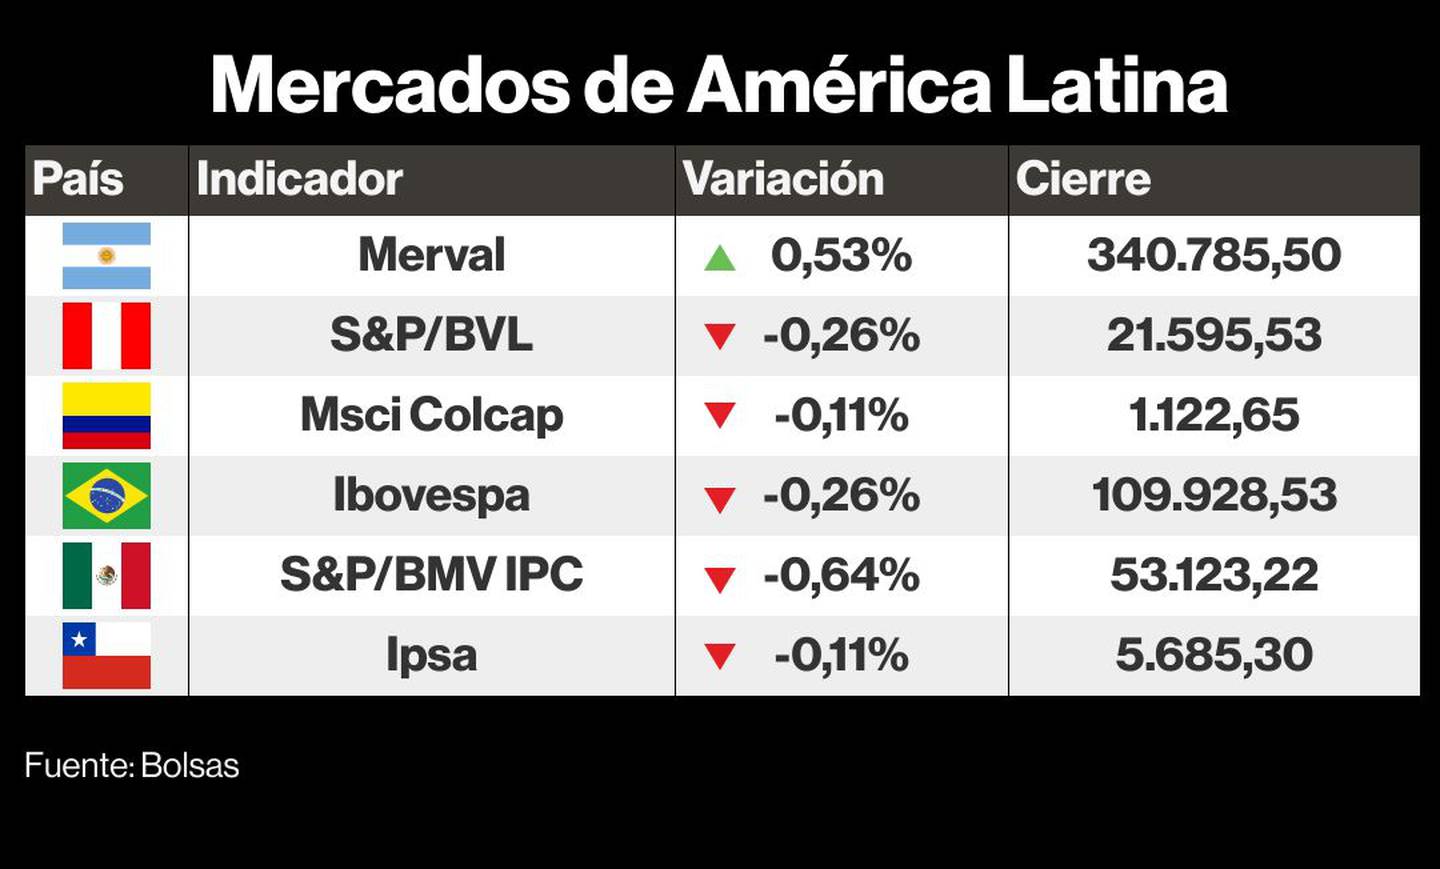 Mercados de América Latina.dfd